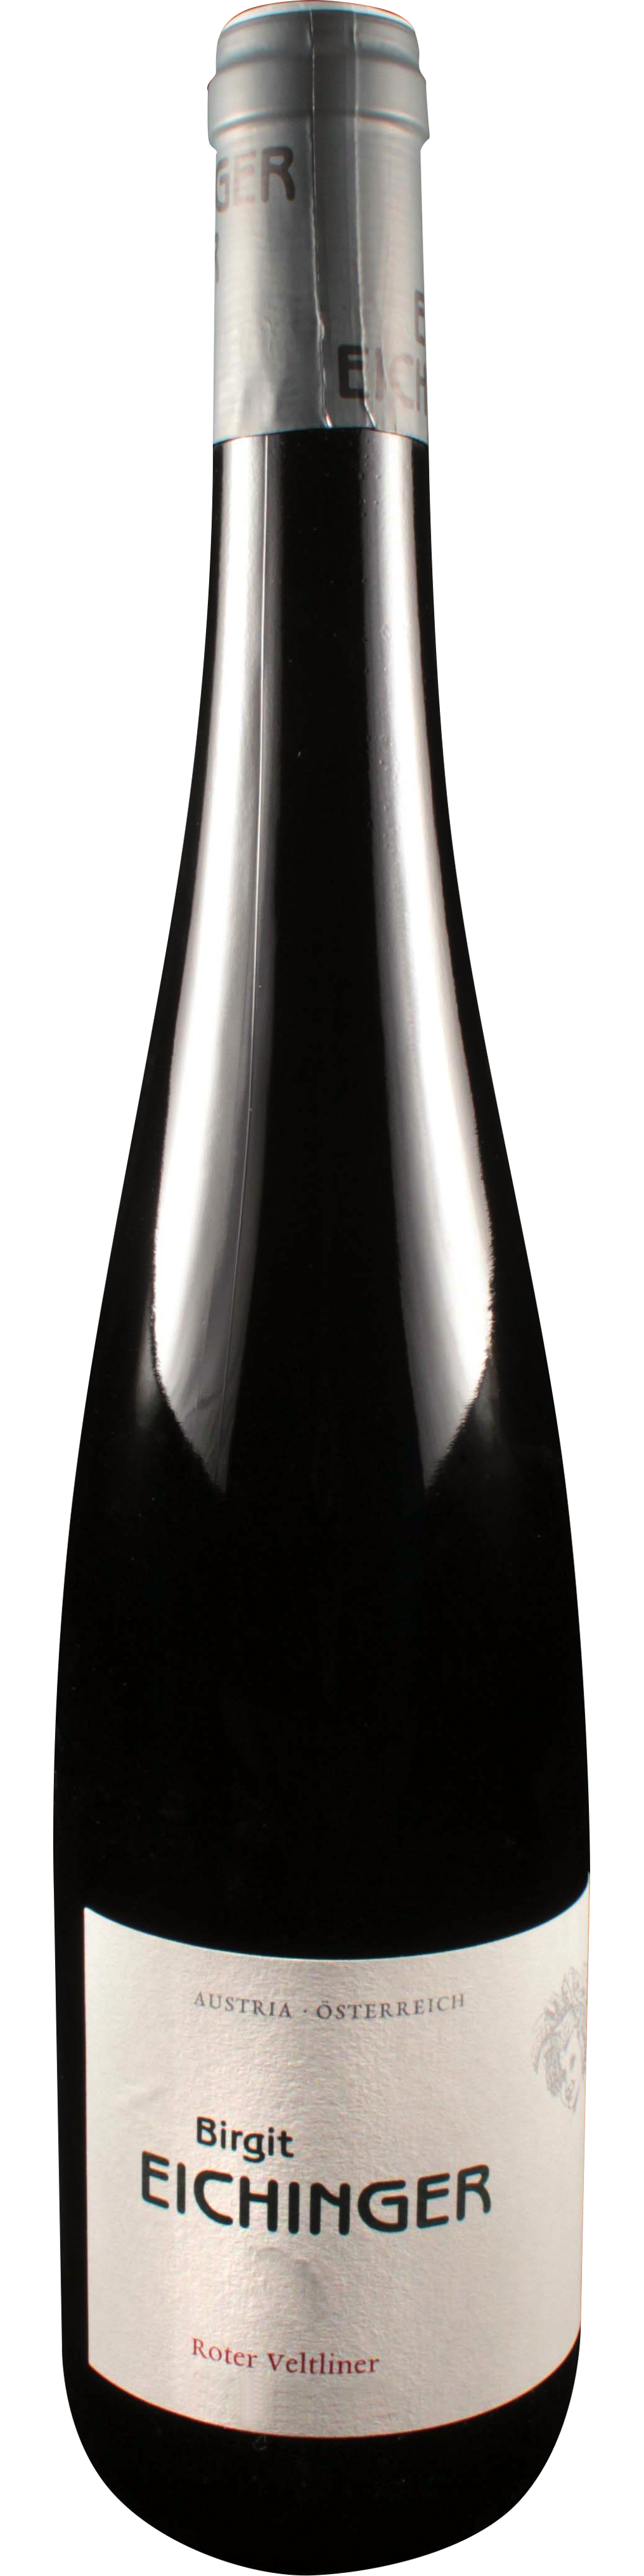 Bottle shot of 2012 Roter Veltliner Strasser Stangl